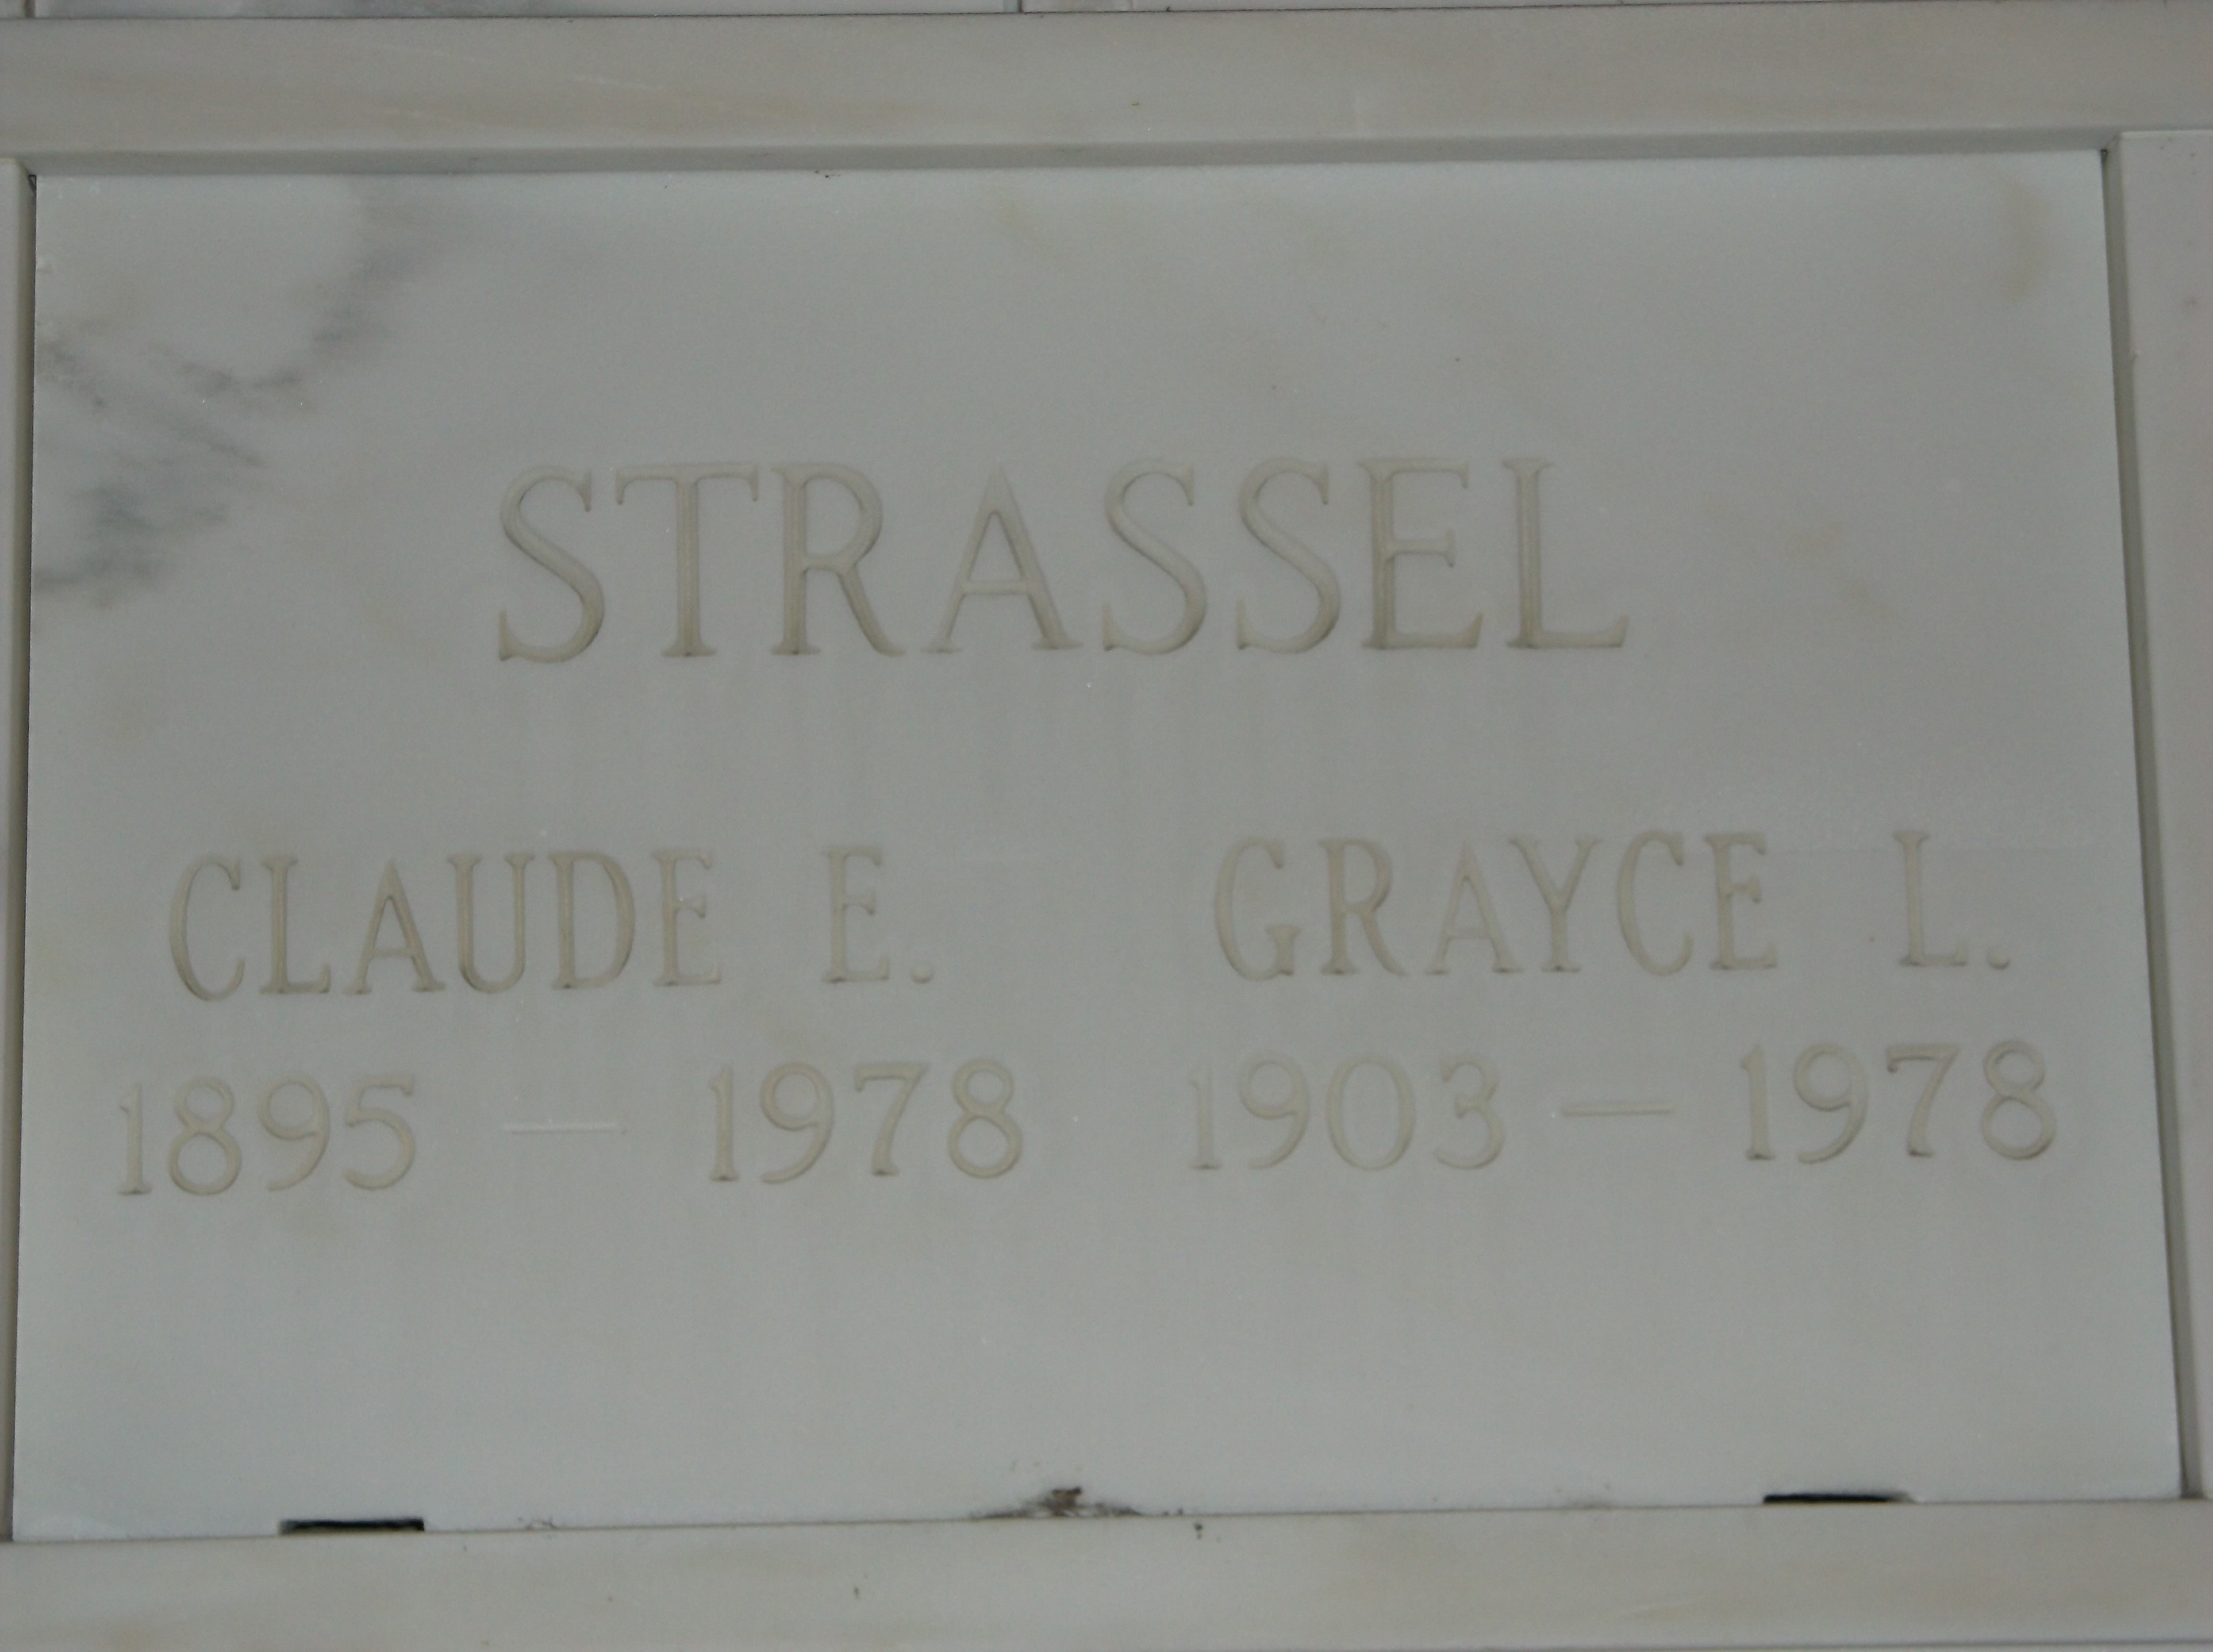 Grayce L Strassel